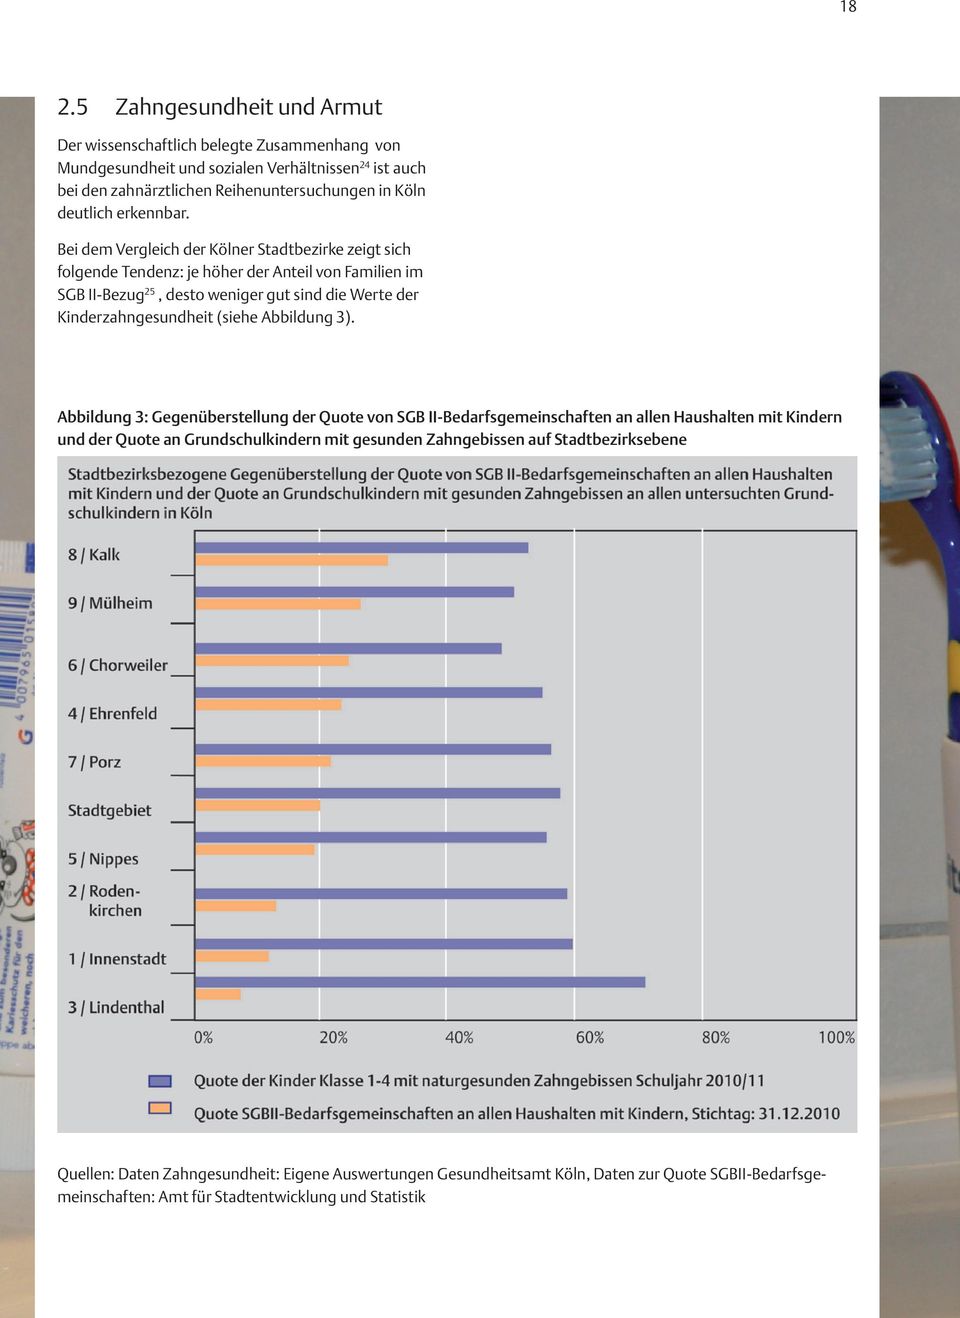 Bei dem Vergleich der Kölner Stadtbezirke zeigt sich folgende Tendenz: je höher der Anteil von Familien im SGB II-Bezug 25, desto weniger gut sind die Werte der Kinderzahngesundheit